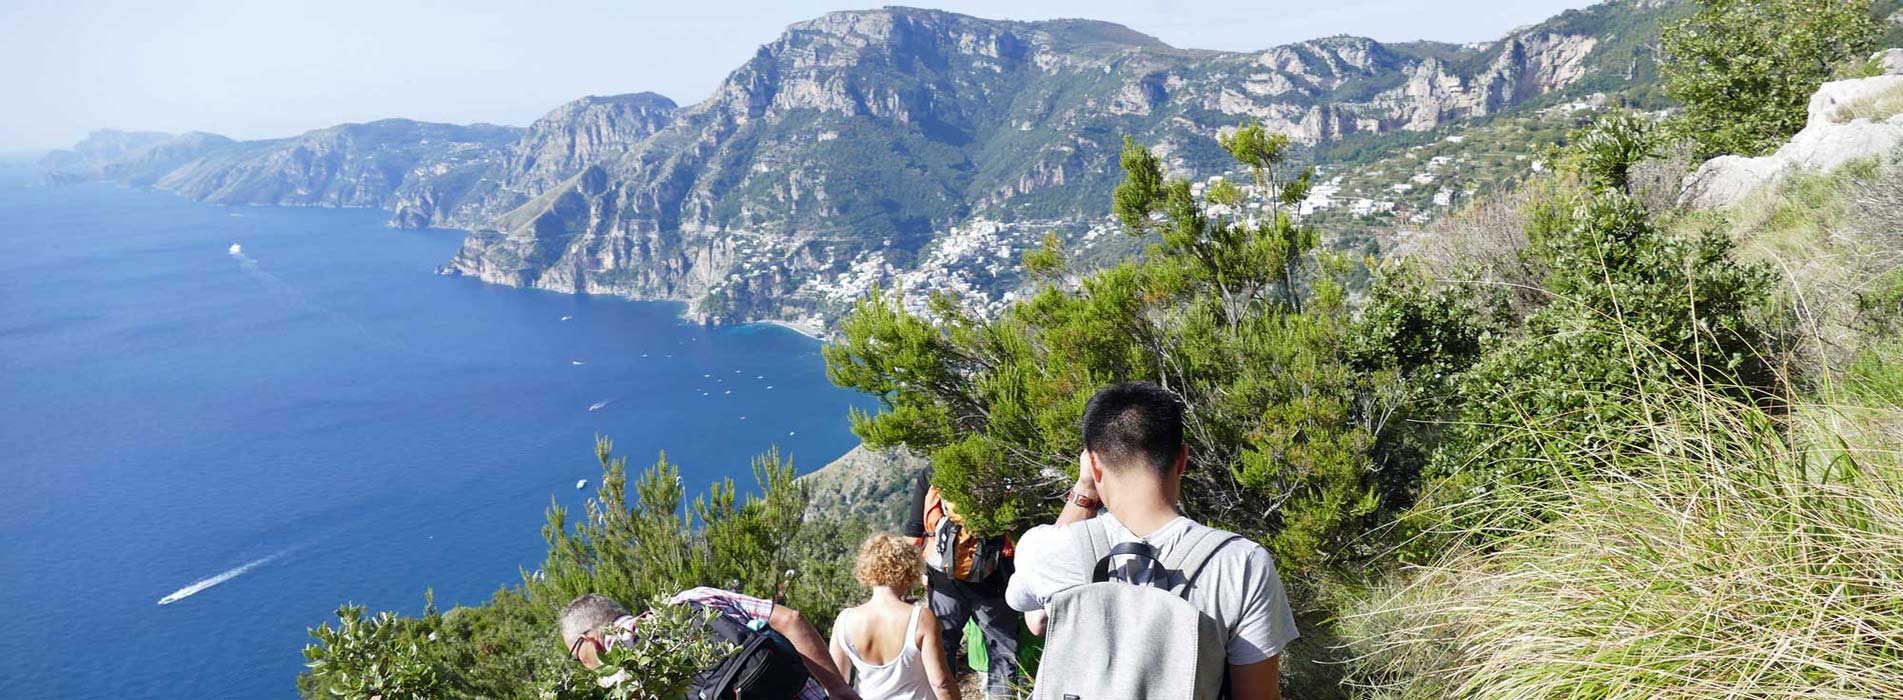 Programmangebot, Wanderung an der Amalfi Küste